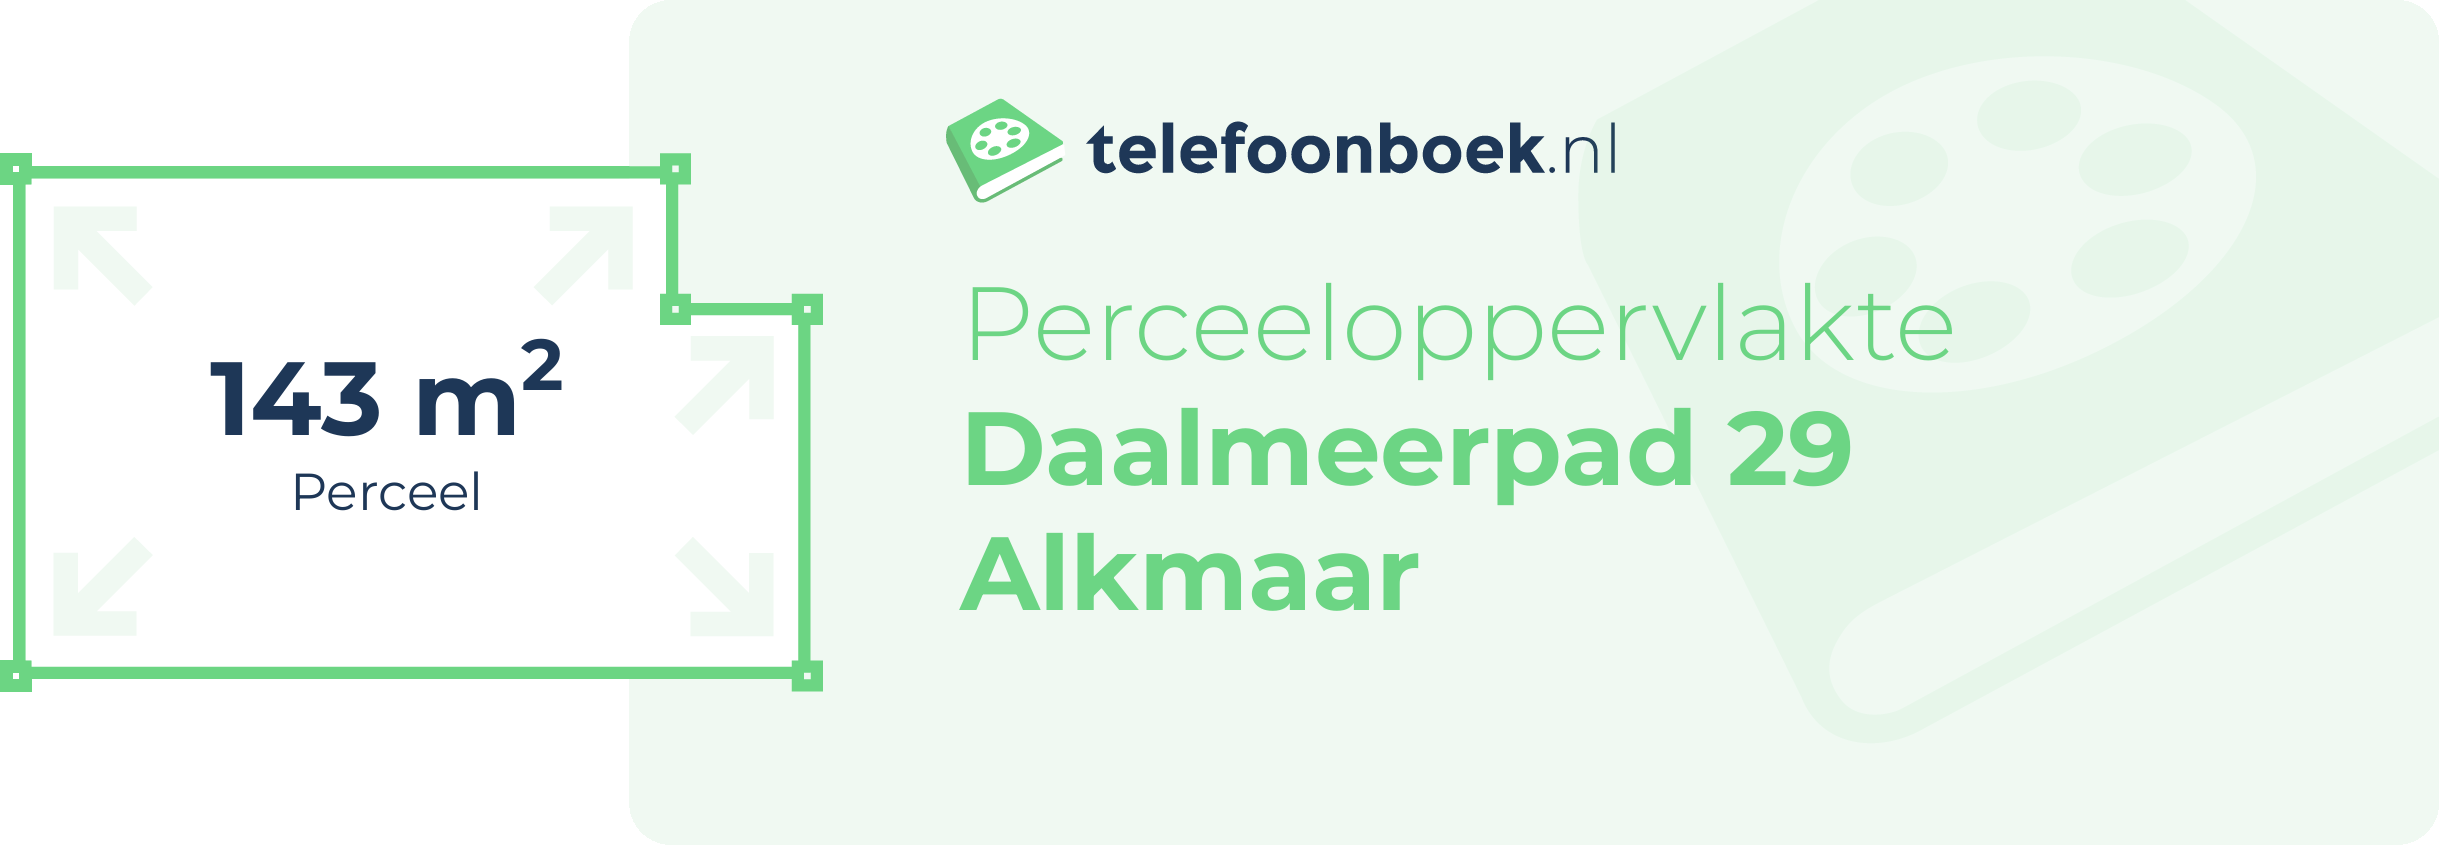 Perceeloppervlakte Daalmeerpad 29 Alkmaar